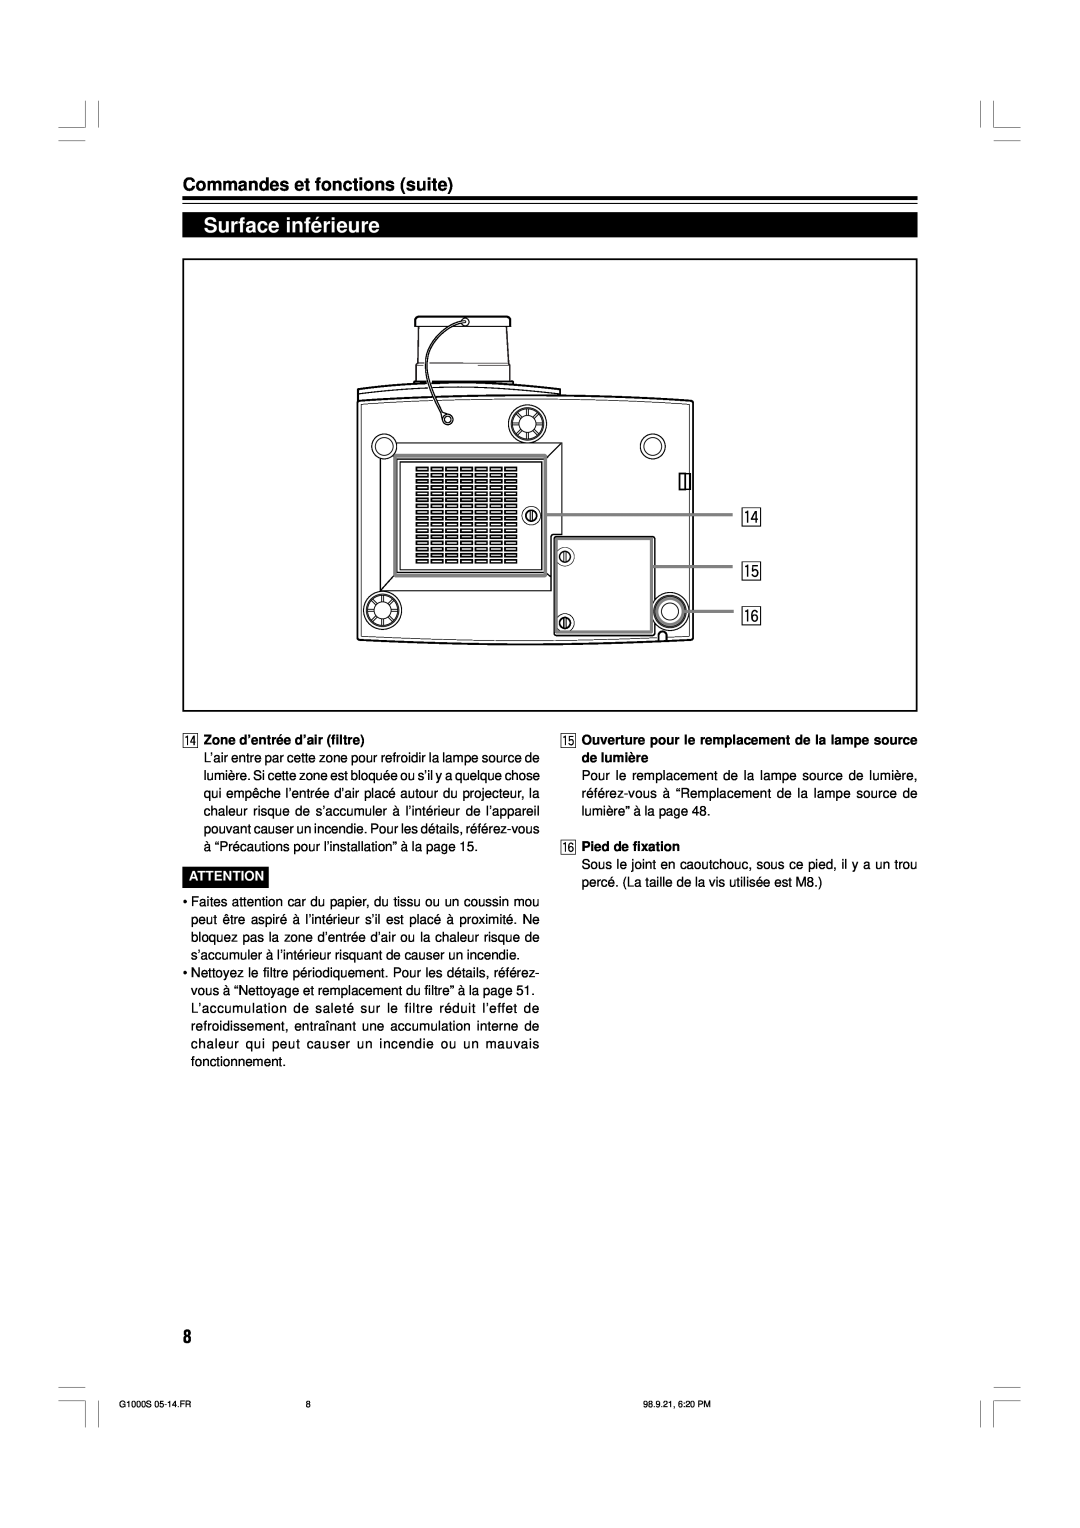 JVC G1000S manual Surface inférieure, r t y, Commandes et fonctions suite, r Zone d’entrée d’air filtre, y Pied de fixation 